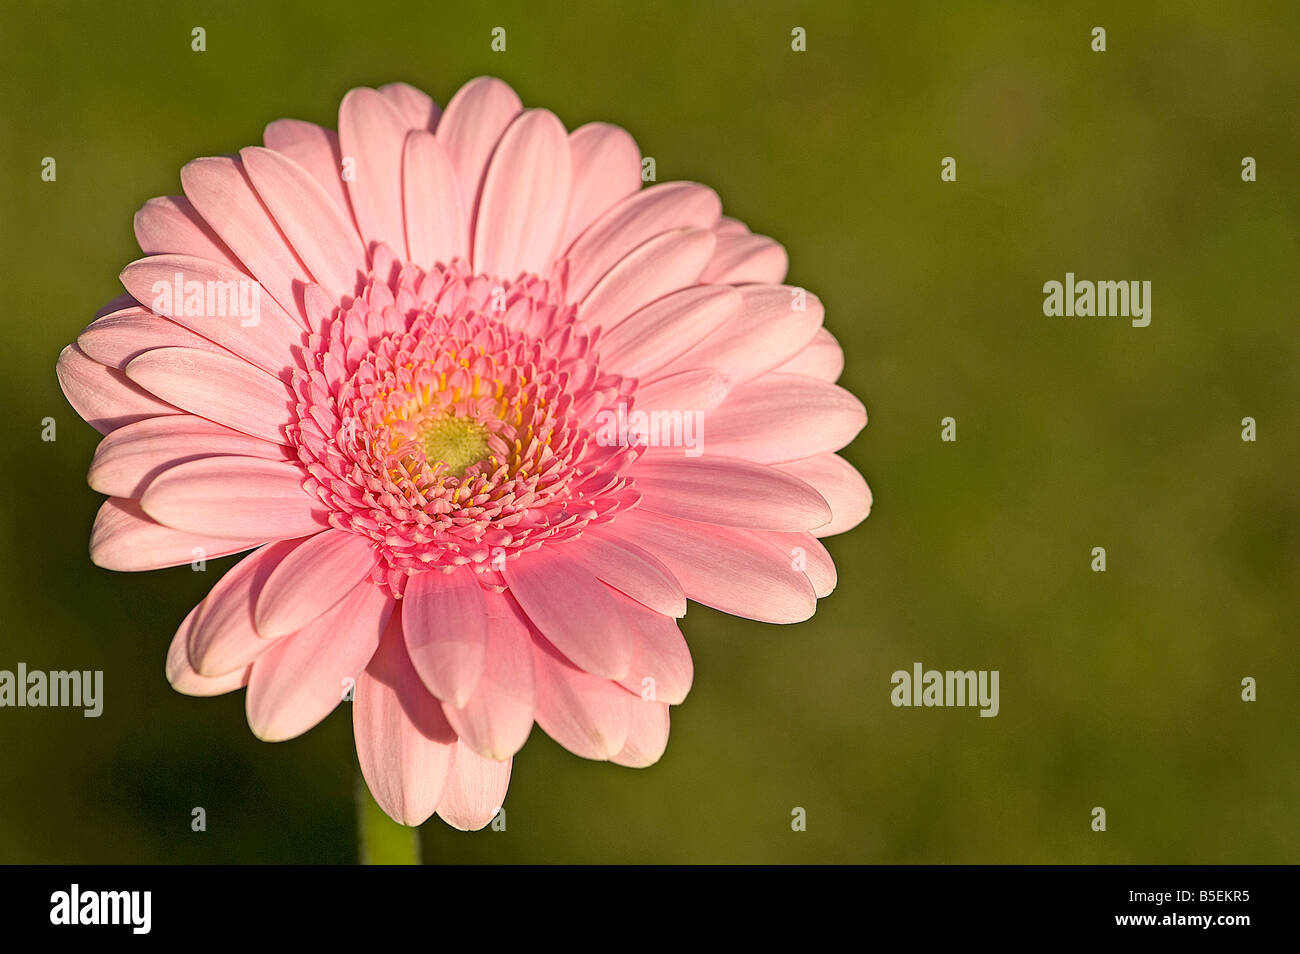 Pink gerbera mostrante simmetria radiale disco e fiori ligulati tipica della famiglia a margherita Foto Stock